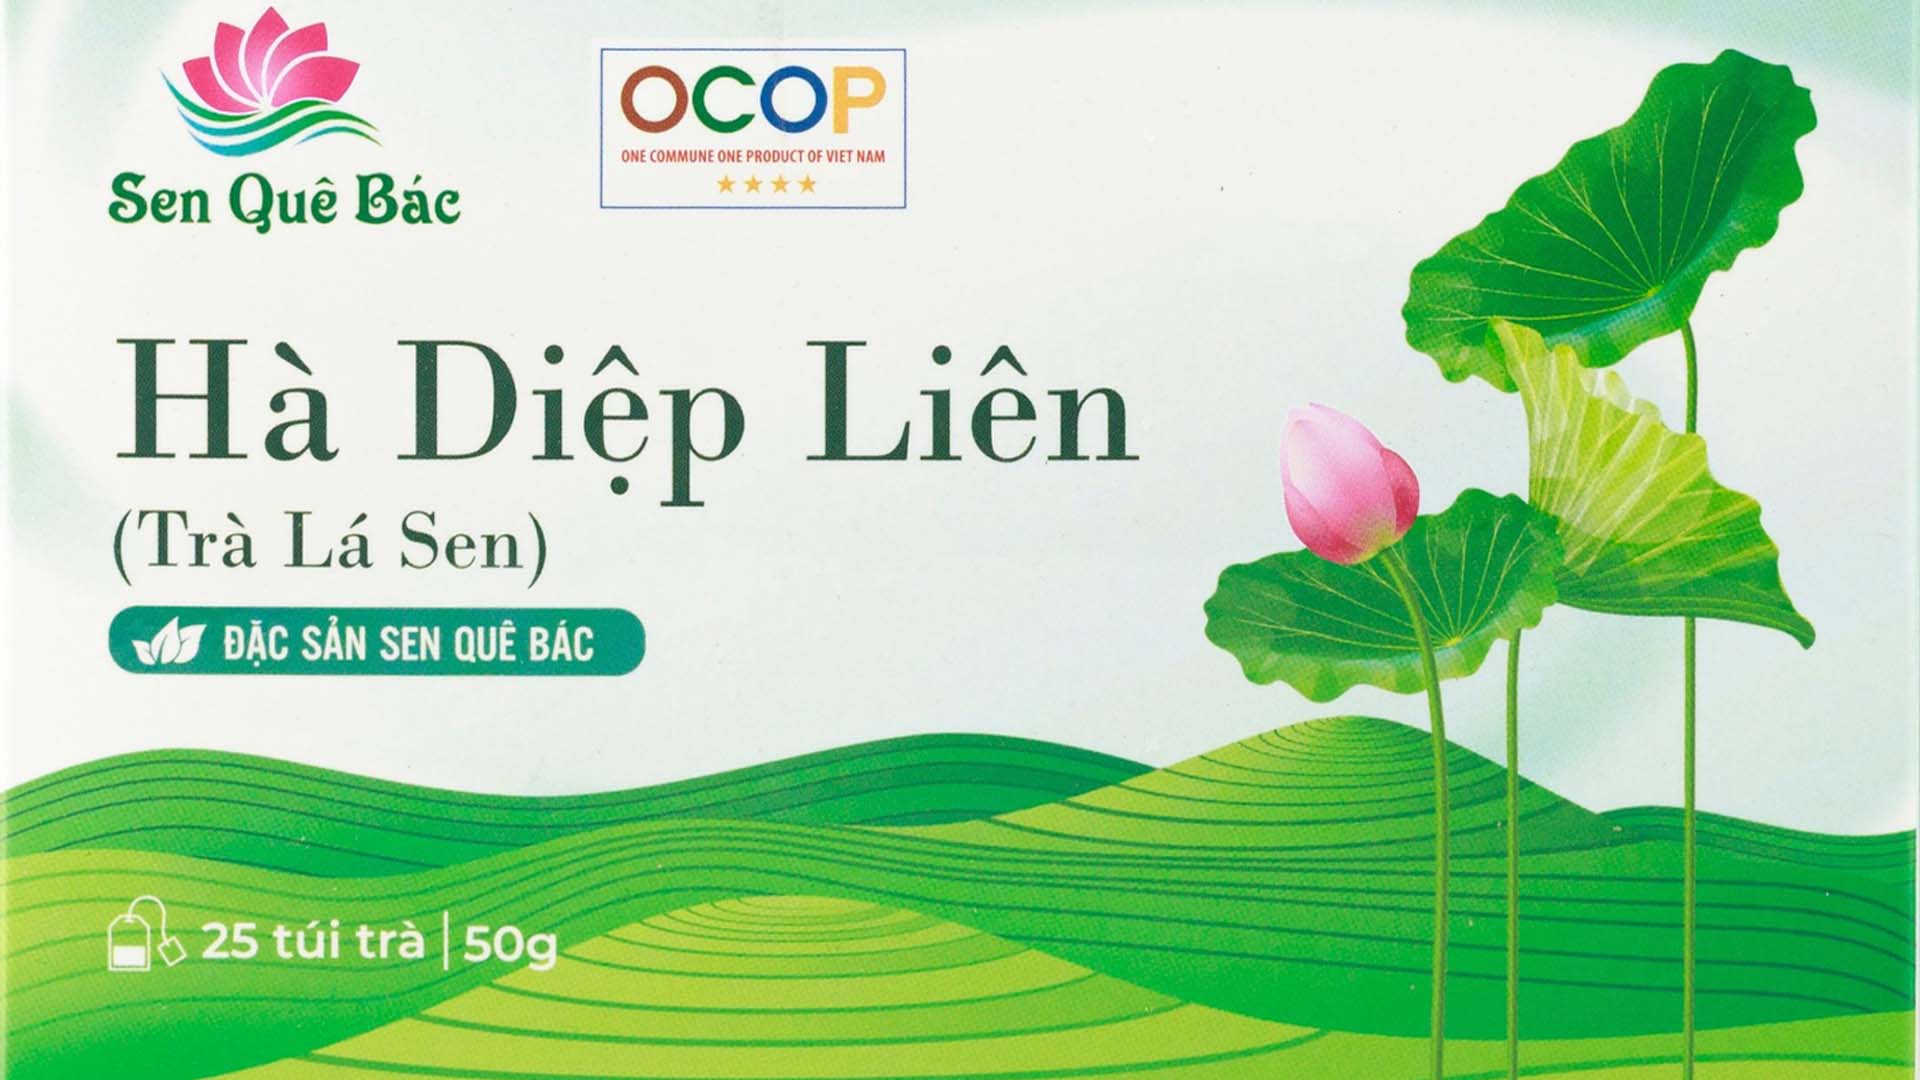 Trà lá sen - Lotus leaf tea | Sản phẩm của hợp tác xã Sen Quê Bác